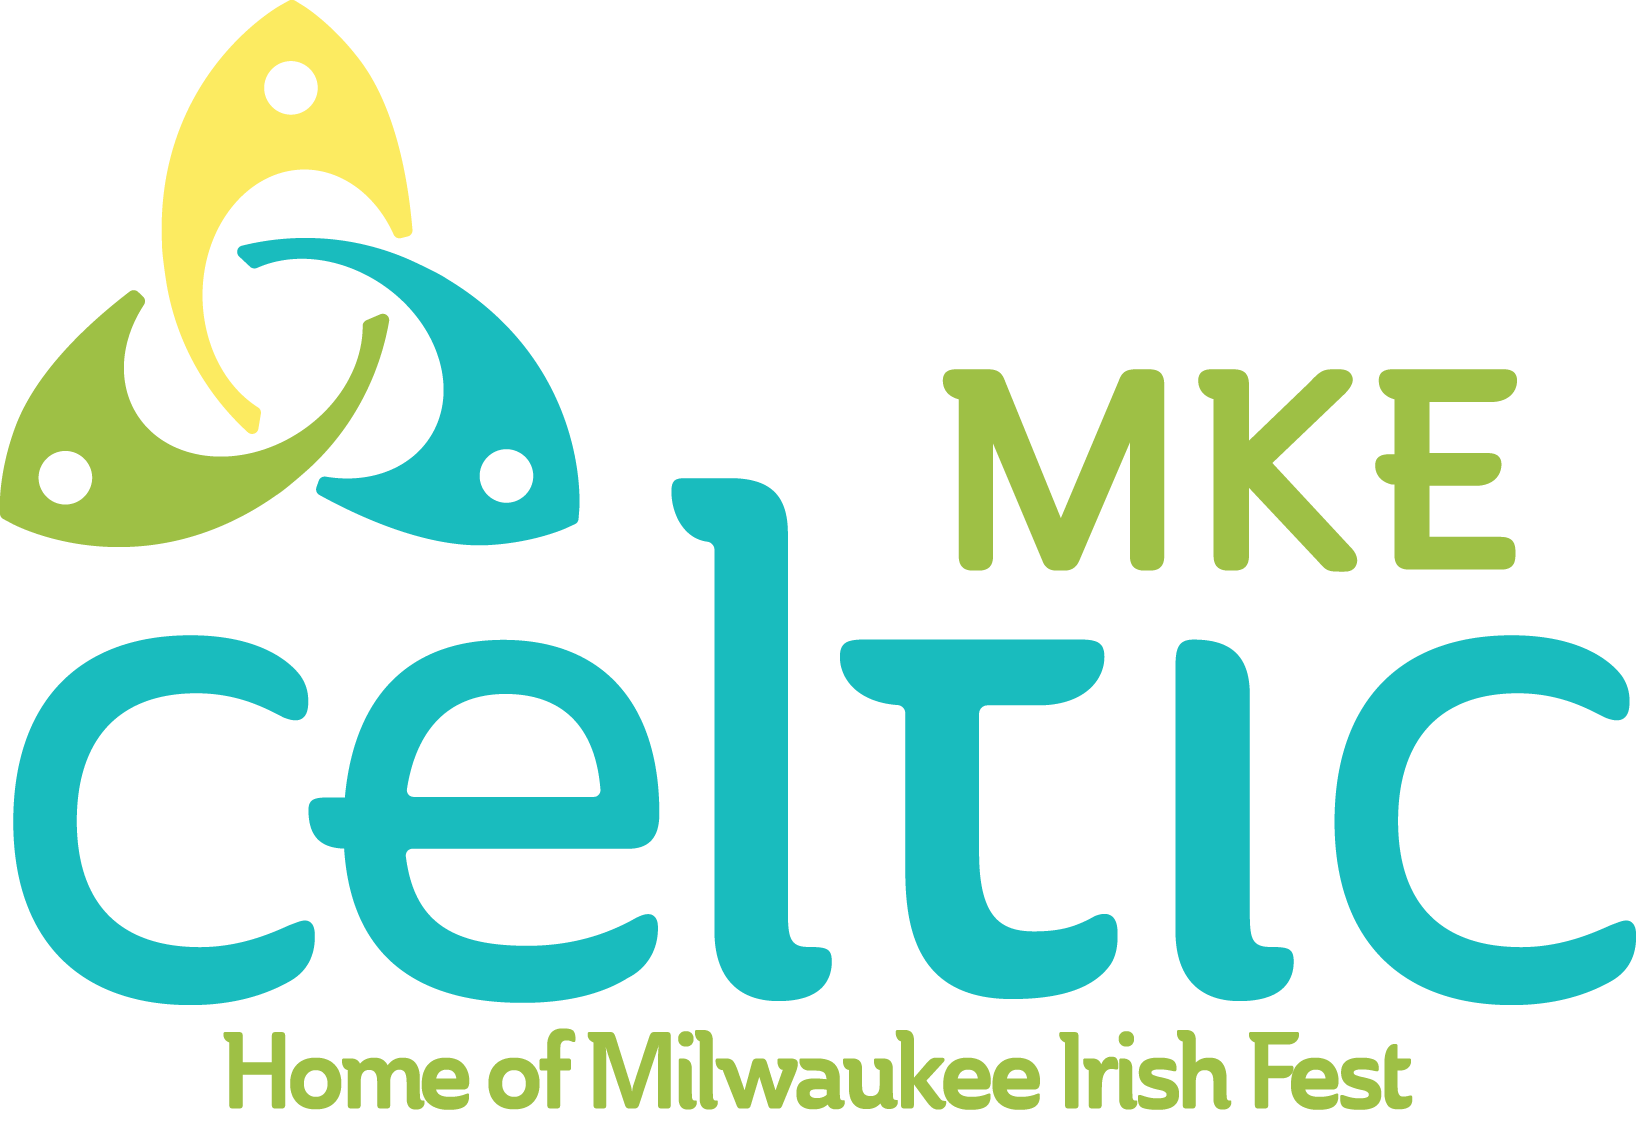 CelticMKE logo